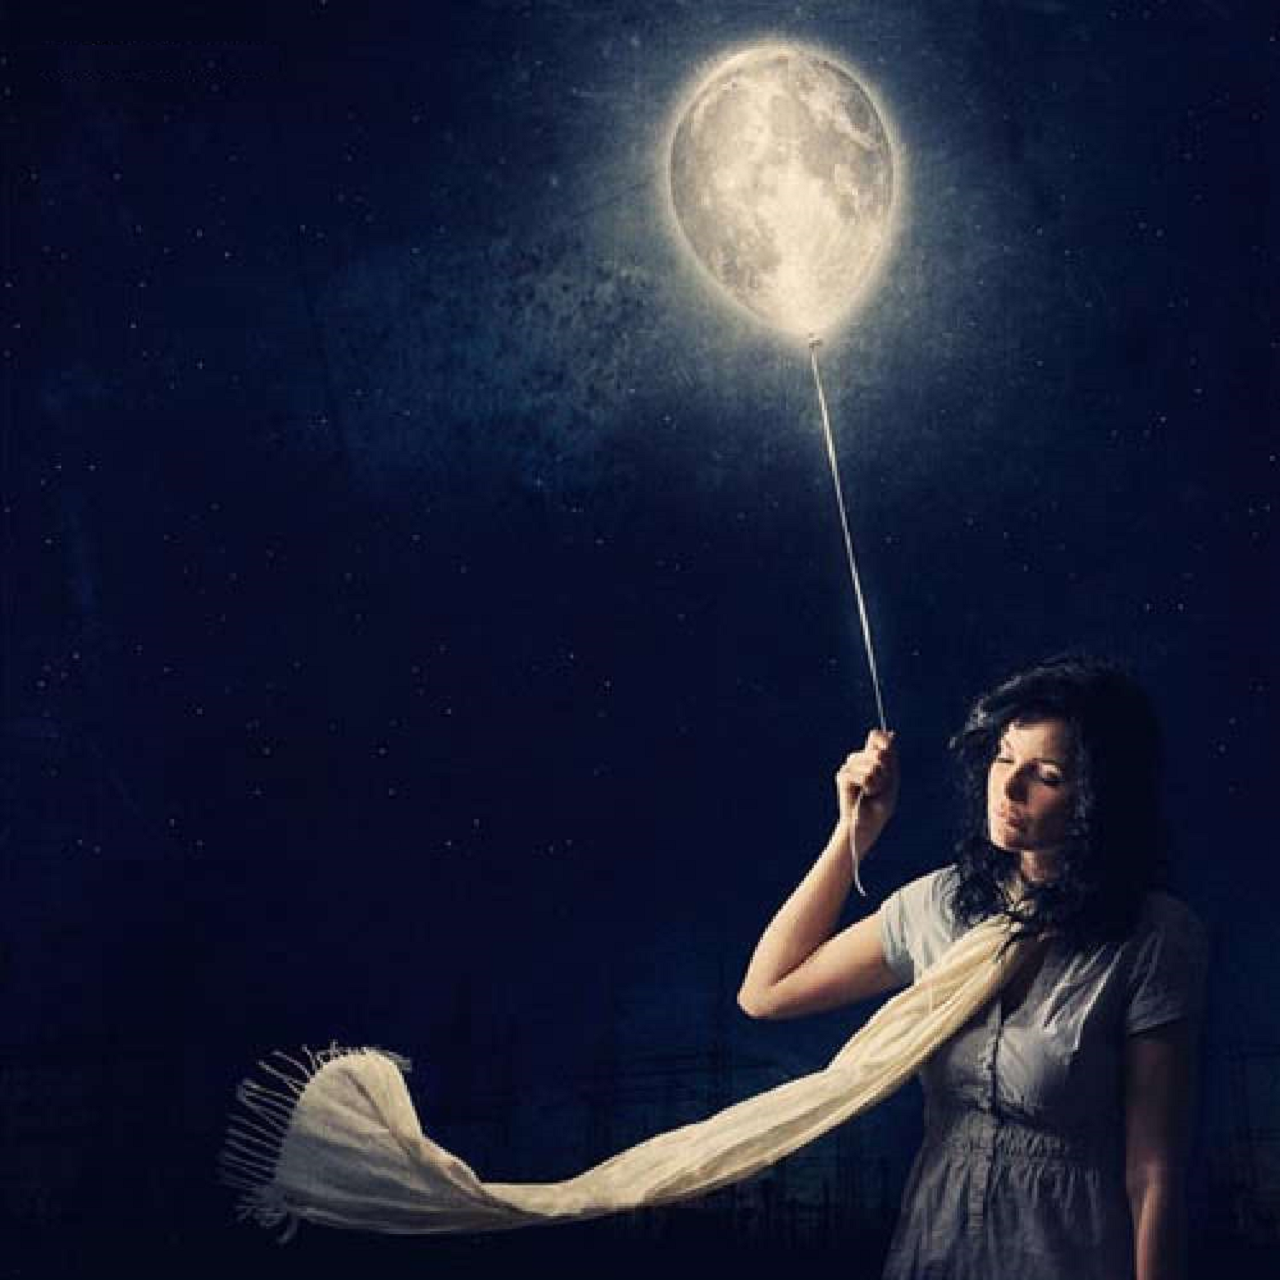 Девочка луна як. Лунная девушка. Девушка-Луна. Девушка с луной в руках. Девушка держит луну.